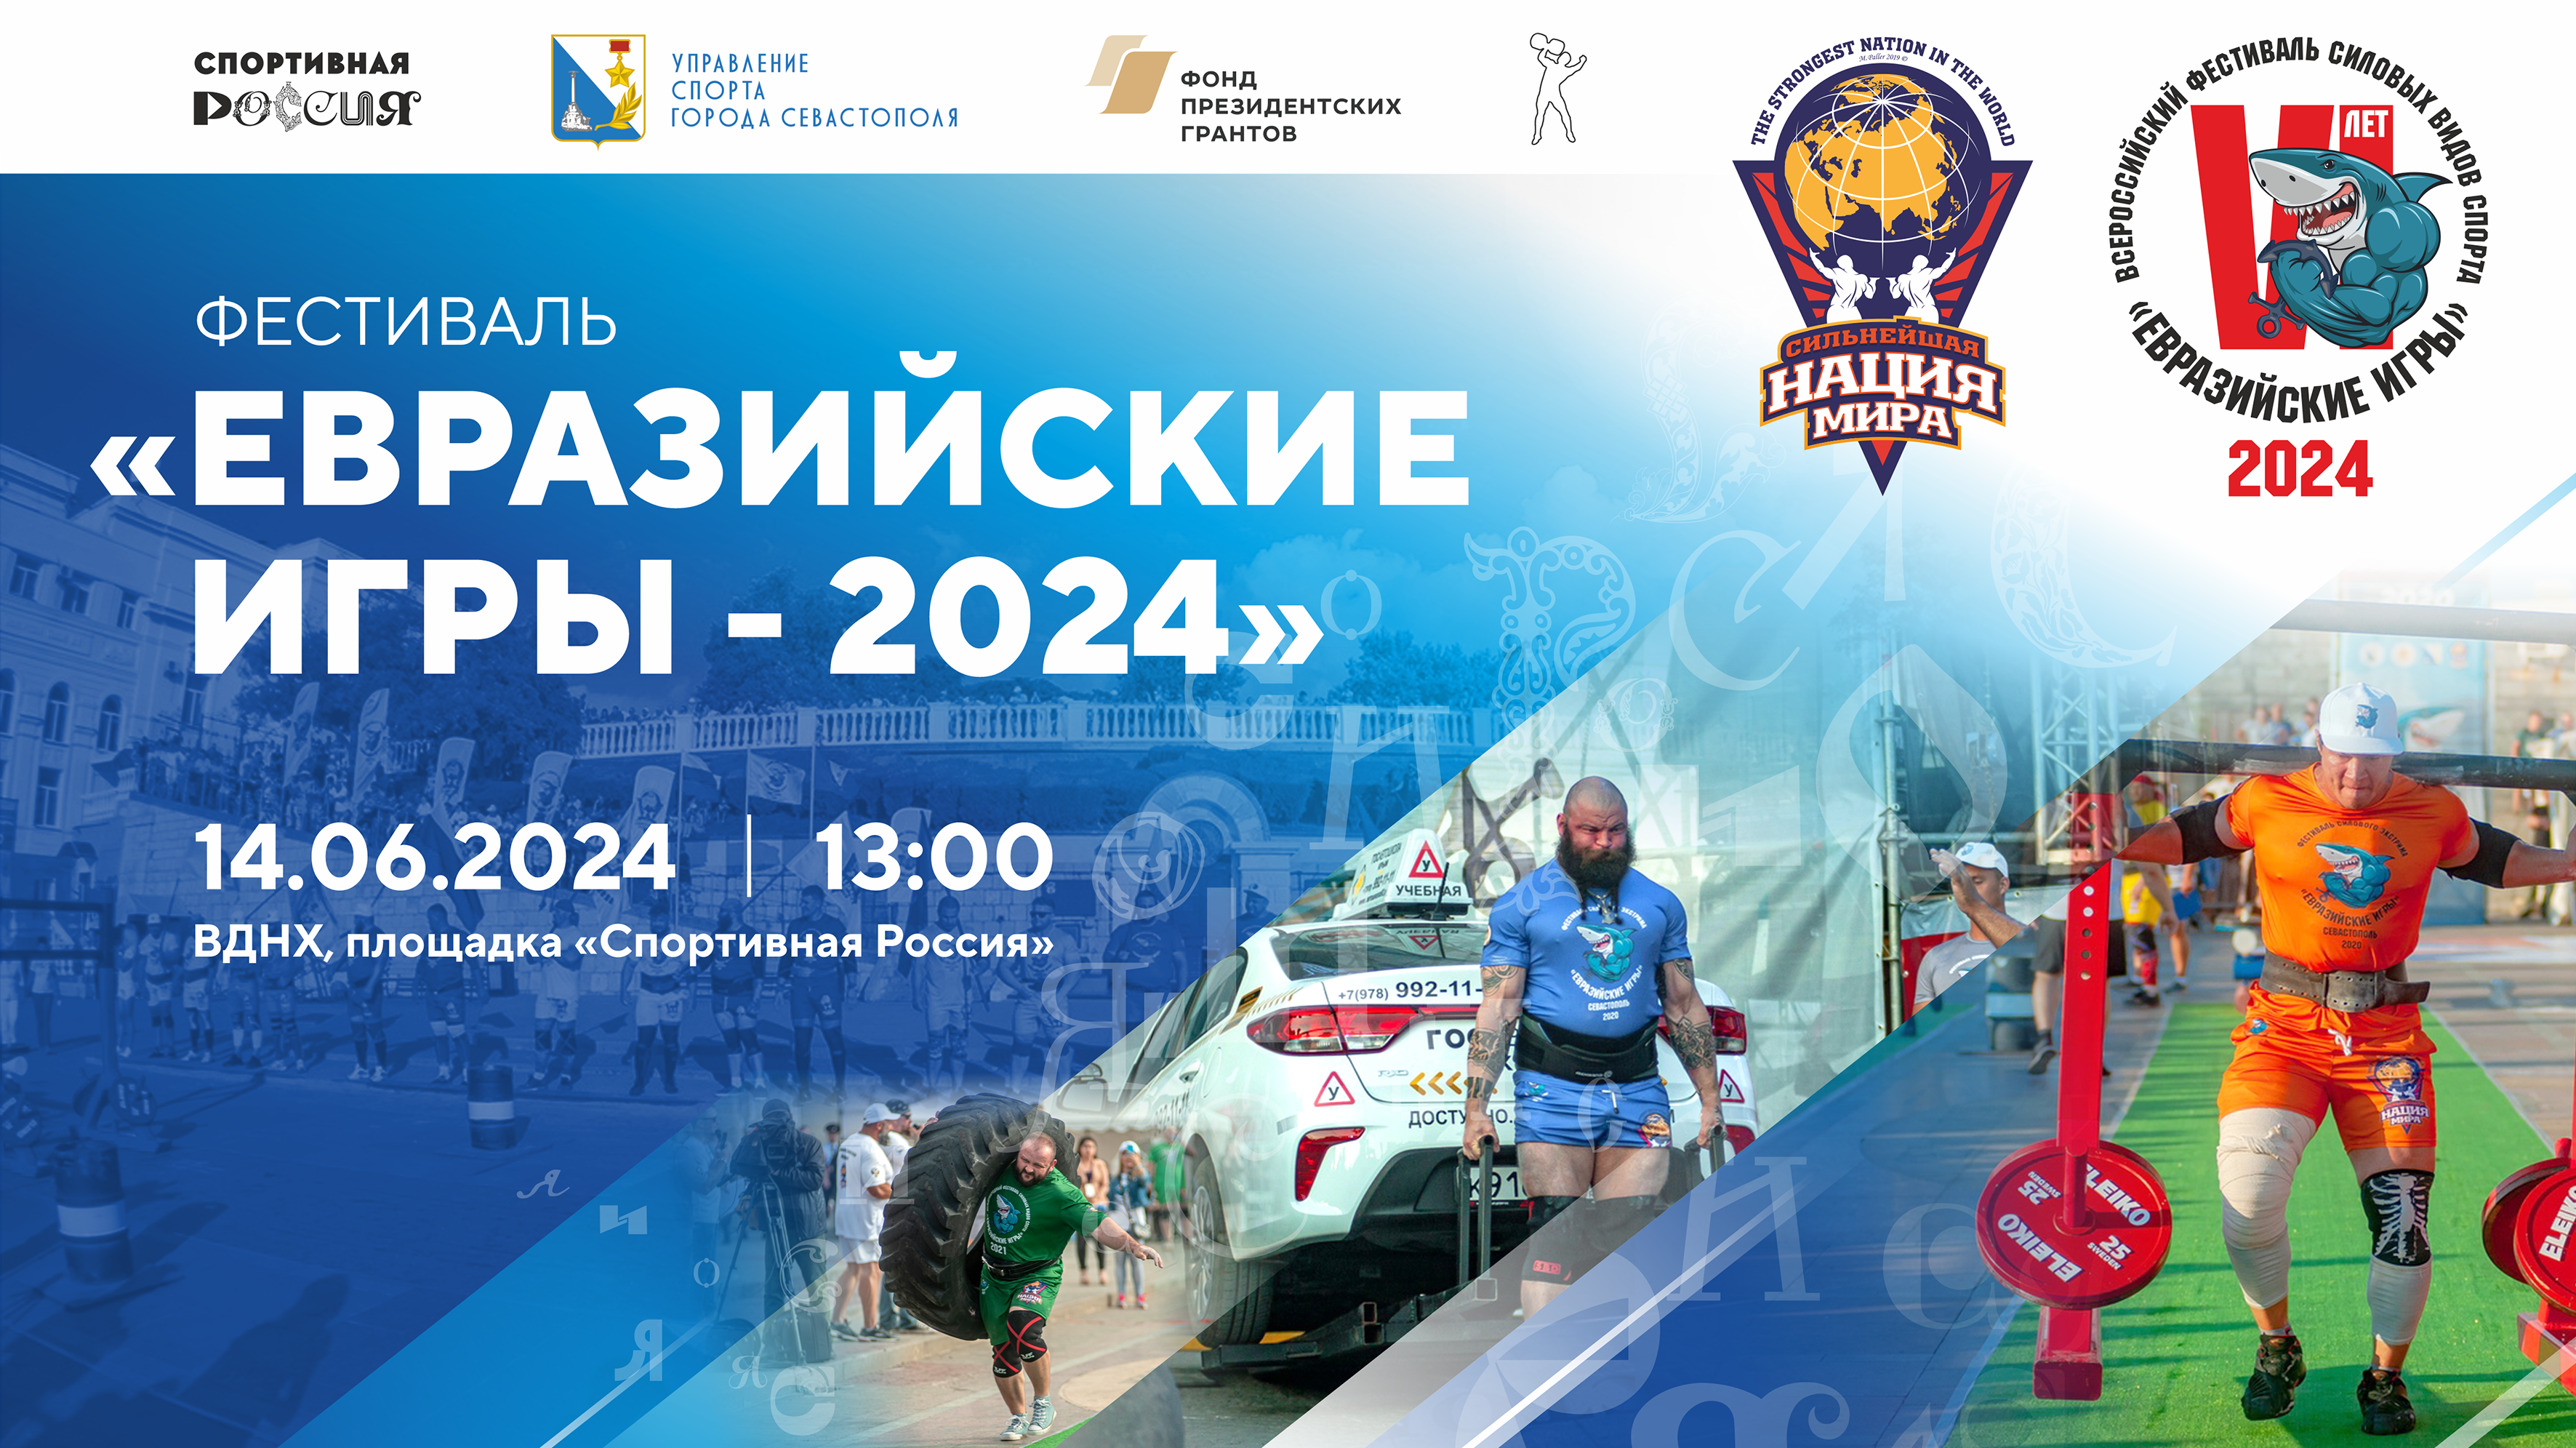 Фестиваль силовых видов спорта «Евразийские игры — 2024», приуроченный ко Дню основания города Севастополя